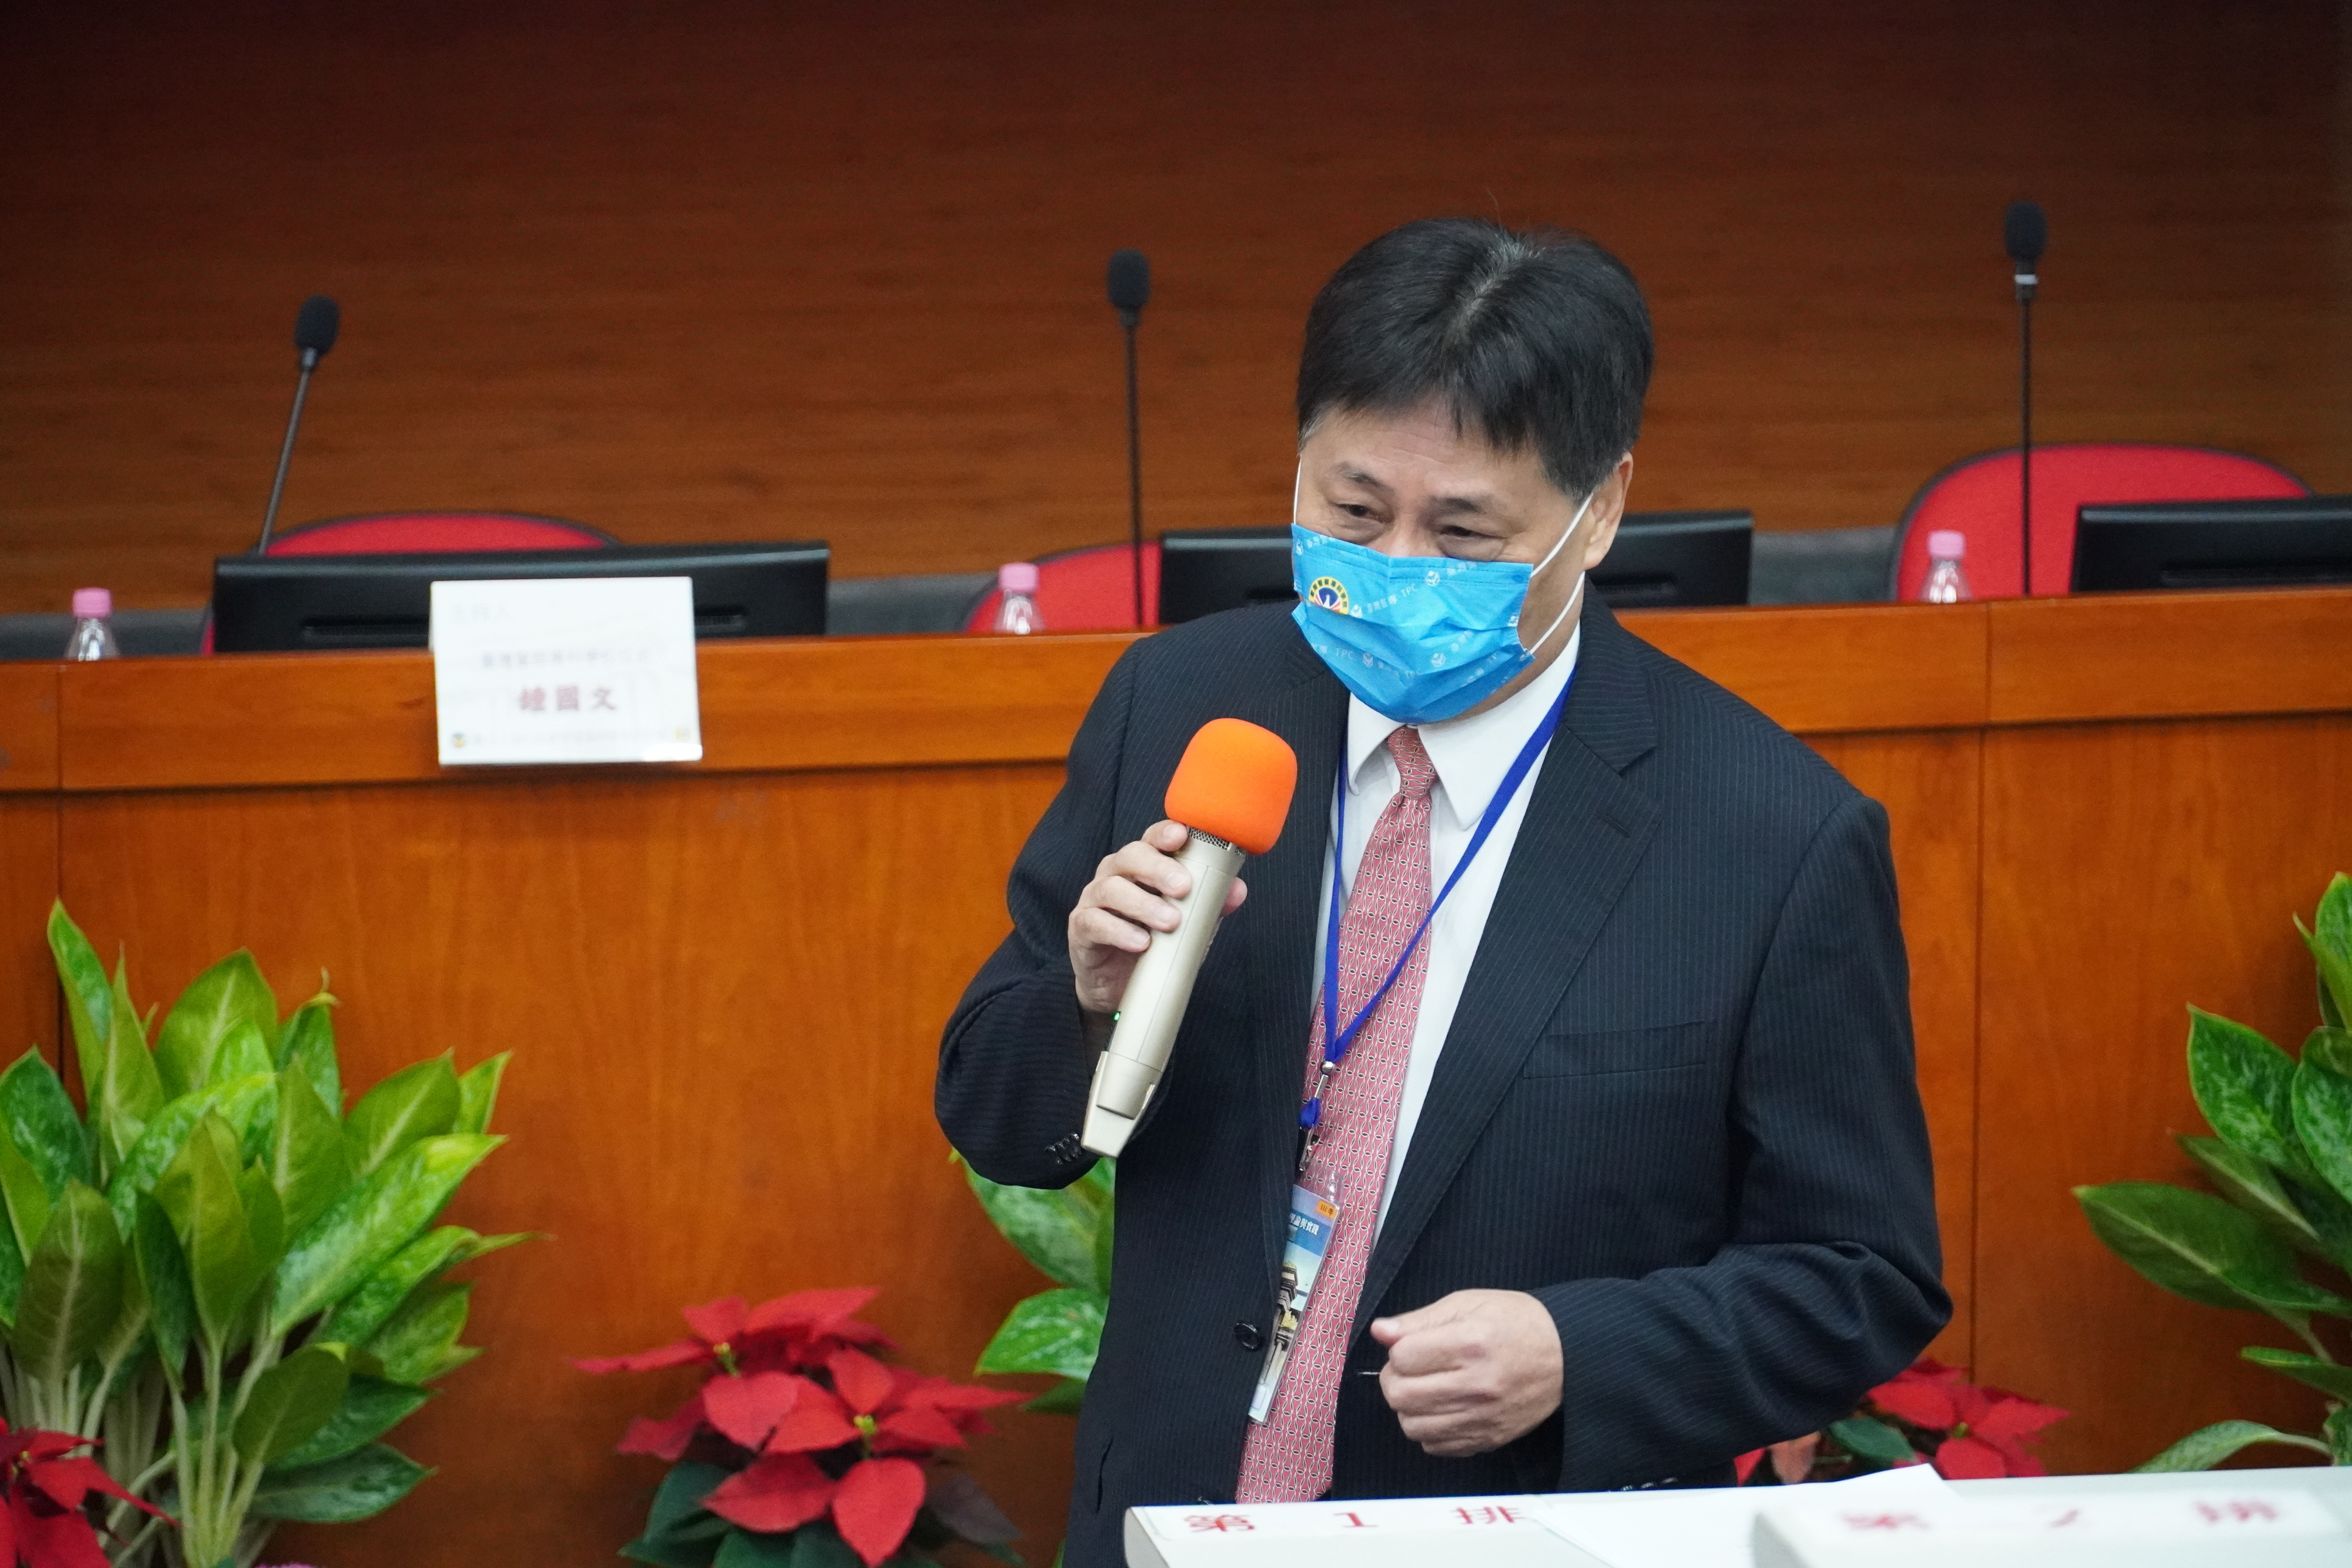 中央警察大學校長陳檡文進行專題演講:百年老店的創新與蛻變。